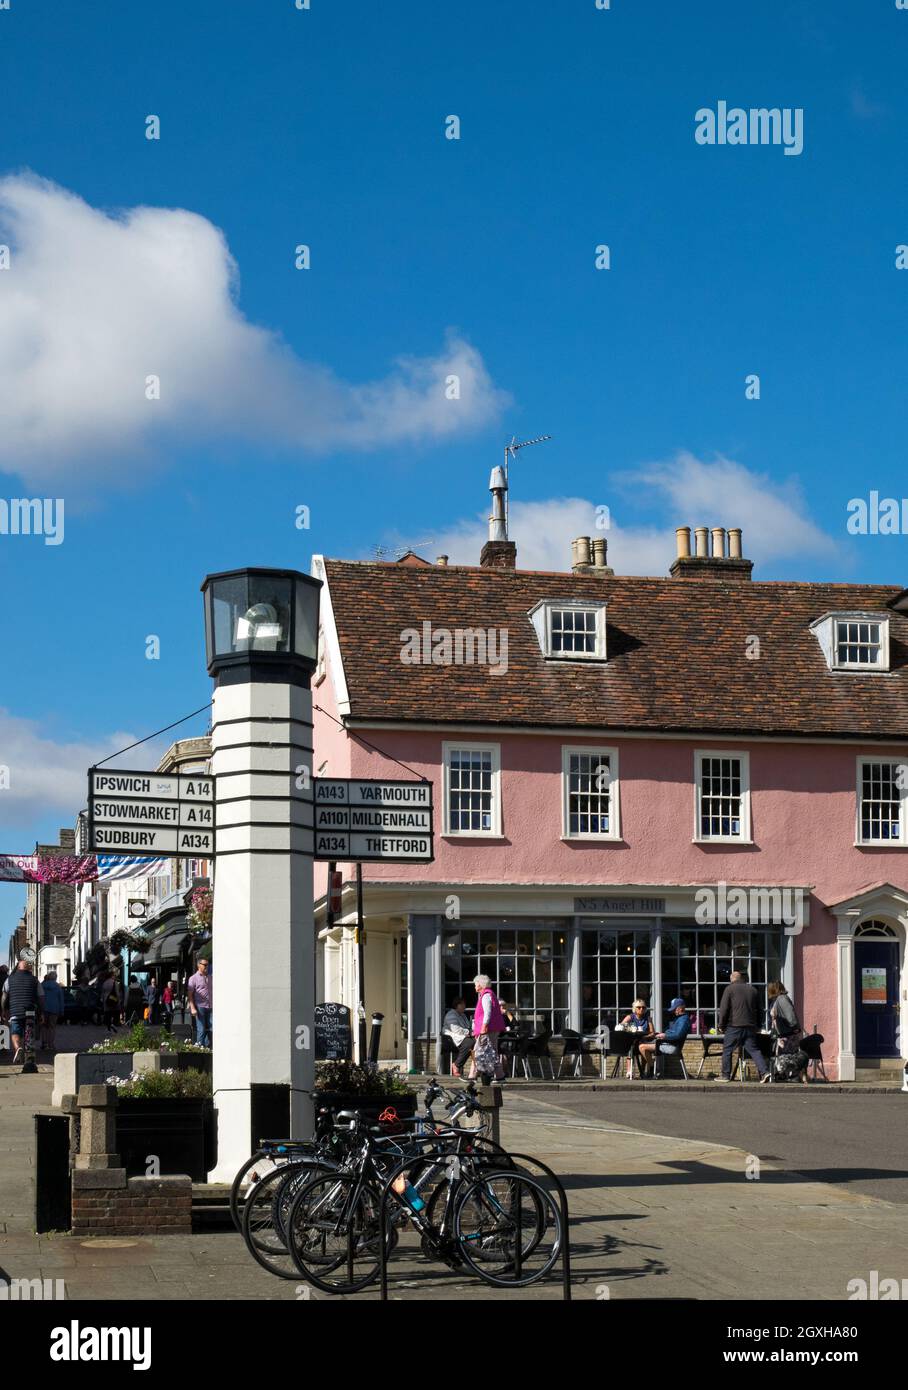 Das Stadtzentrum von Bury St Edmunds mit seinen historischen Gebäuden und der schrulligen Lighthouse-Beschilderung, Bury St Edmunds, Suffolk, England, Großbritannien Stockfoto